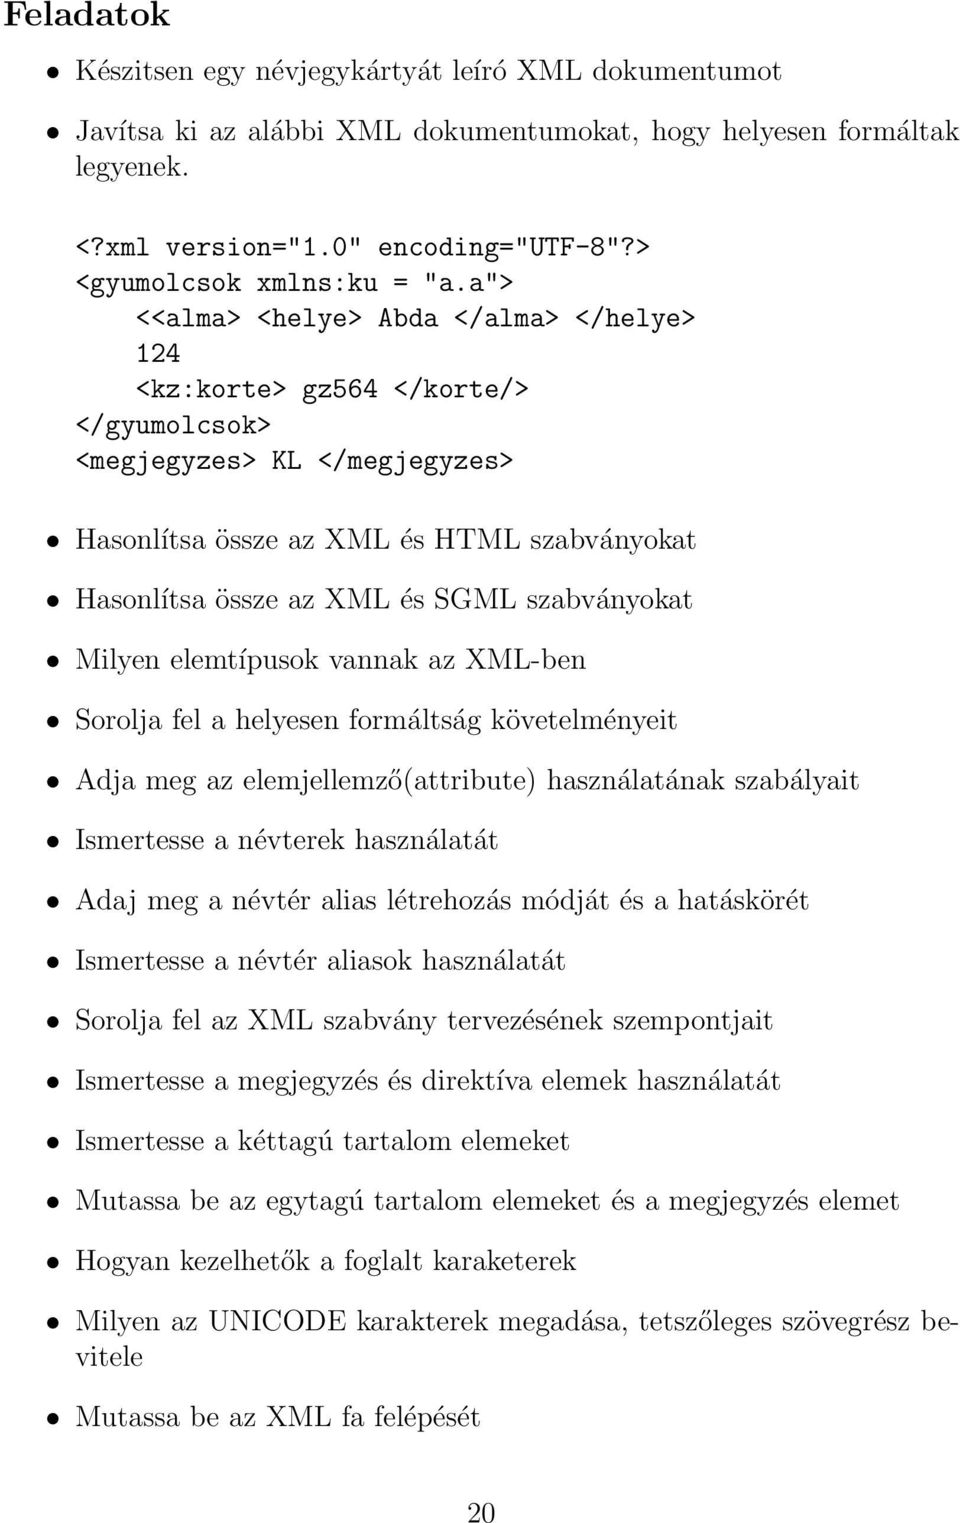 a"> <<alma> <helye> Abda </alma> </helye> 124 <kz:korte> gz564 </korte/> </gyumolcsok> <megjegyzes> KL </megjegyzes> Hasonlítsa össze az XML és HTML szabványokat Hasonlítsa össze az XML és SGML